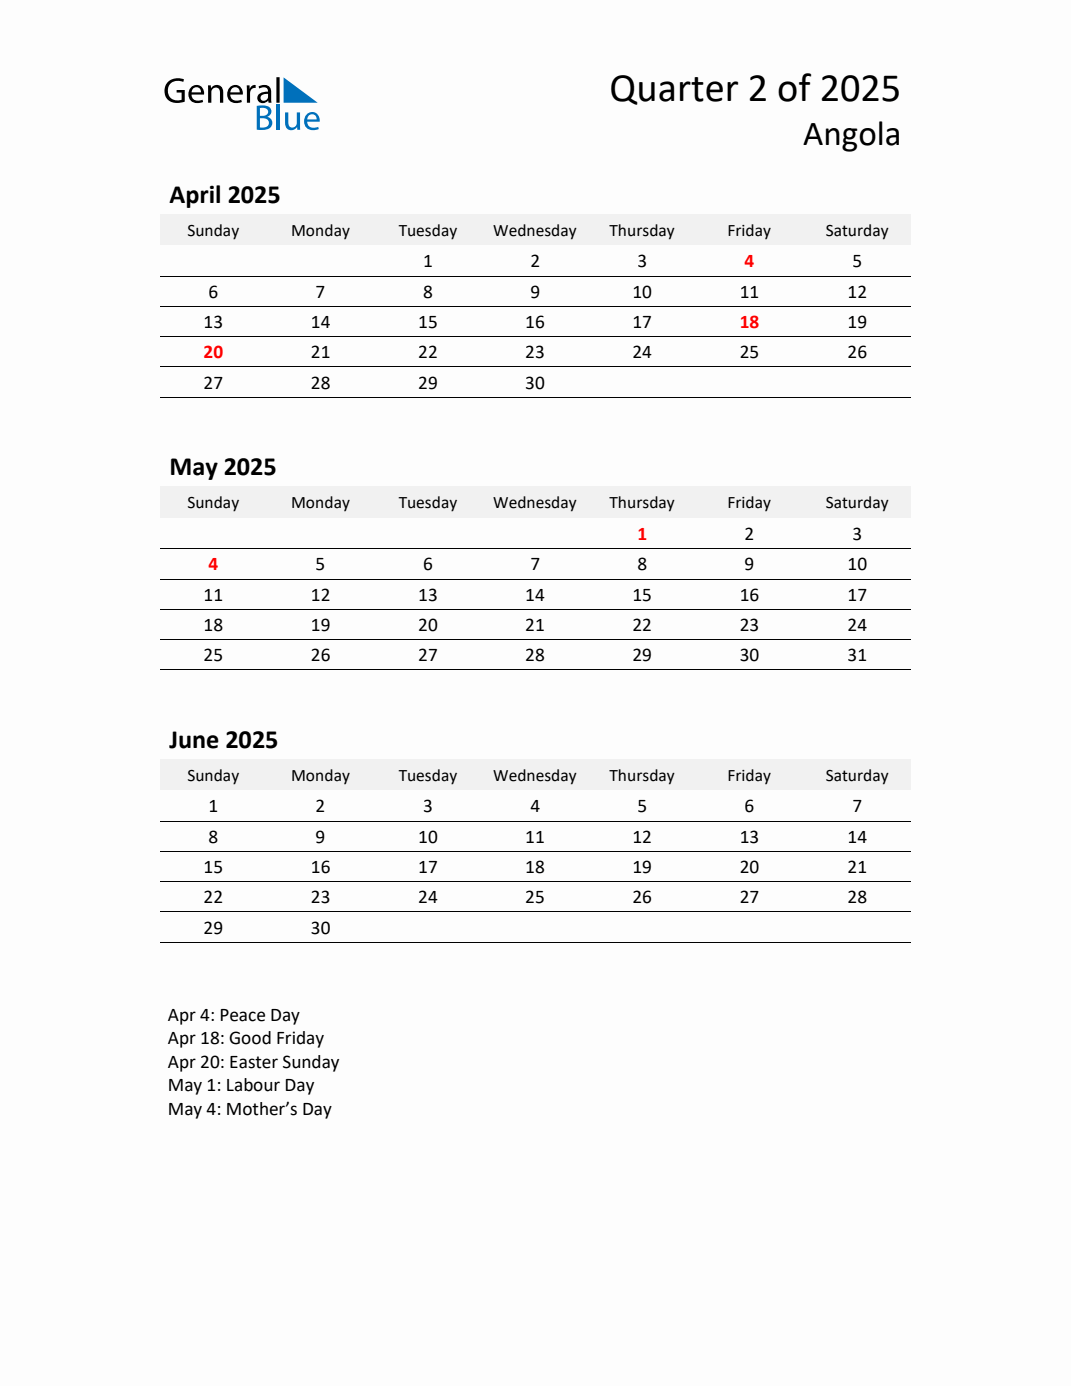 Q2 2025 Quarterly Calendar With Angola Holidays